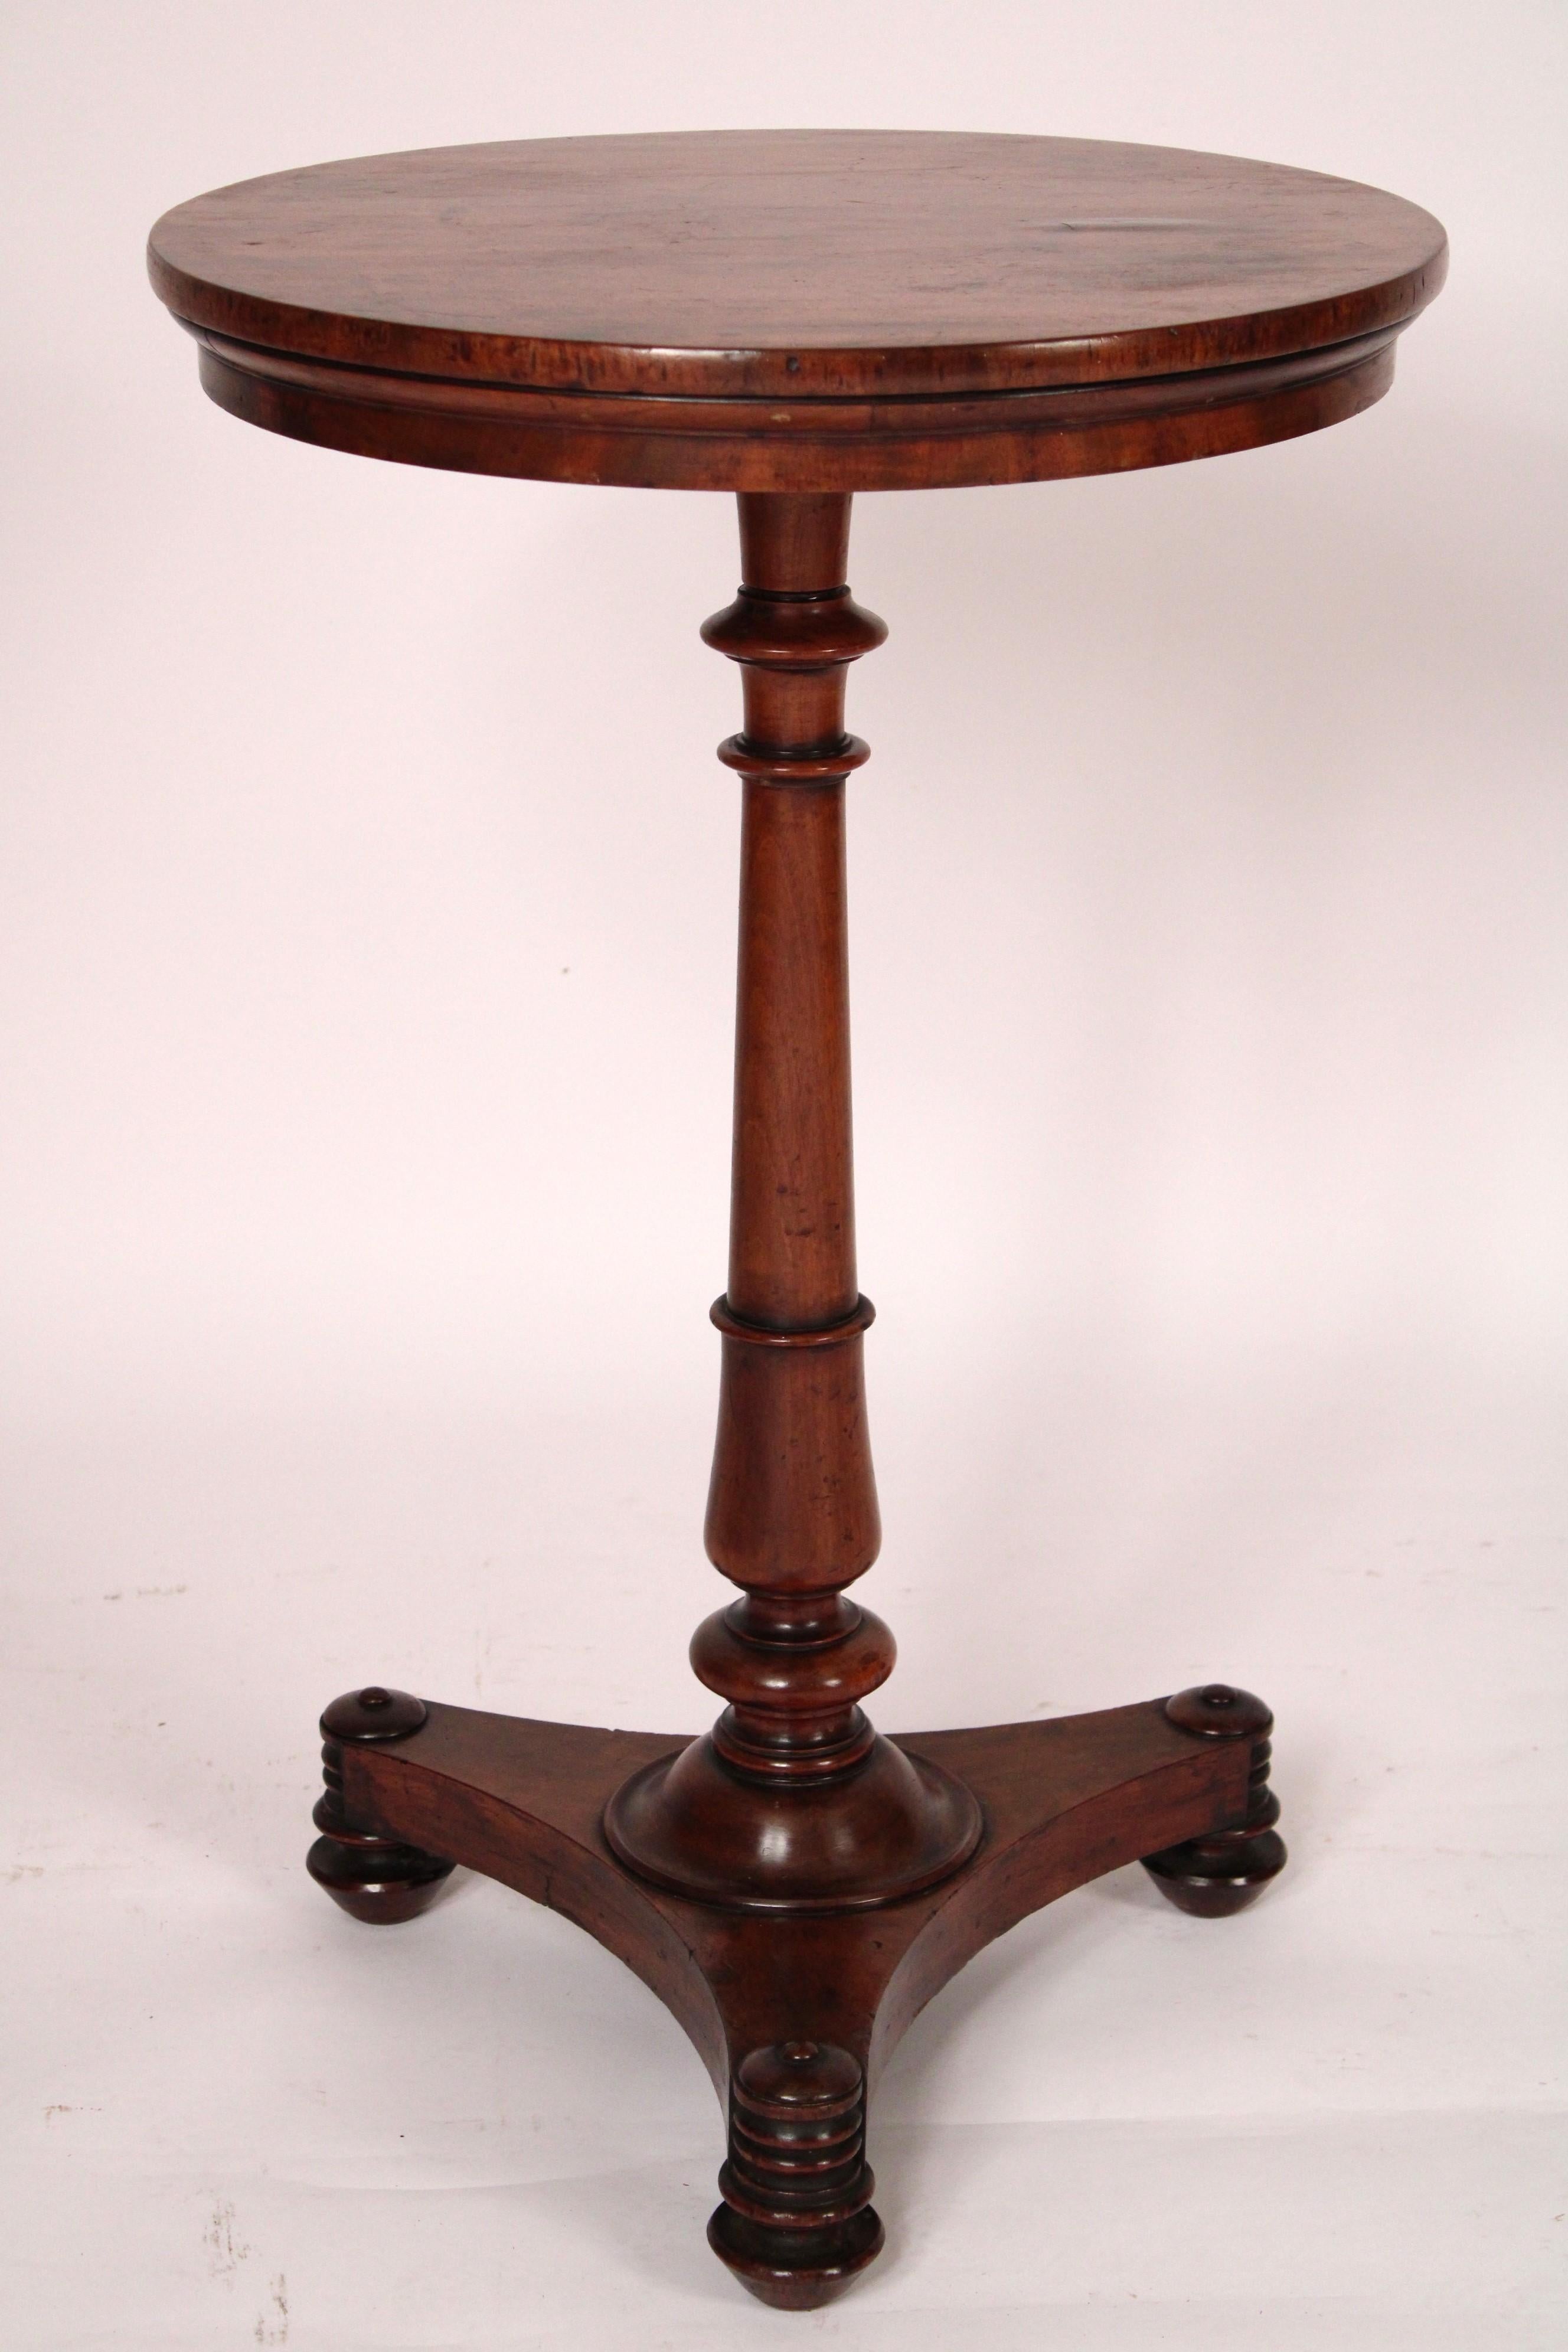 Englischer Regency-Mahagoni-Leuchter / Beistelltisch, um 1820. Mit einer runden Platte und einem länglichen, vasenförmigen Sockel, der auf einem dreifachen Sockel mit Bienenkorb-Ecken ruht, der auf gedrehten, konischen Füßen steht. Mit einer